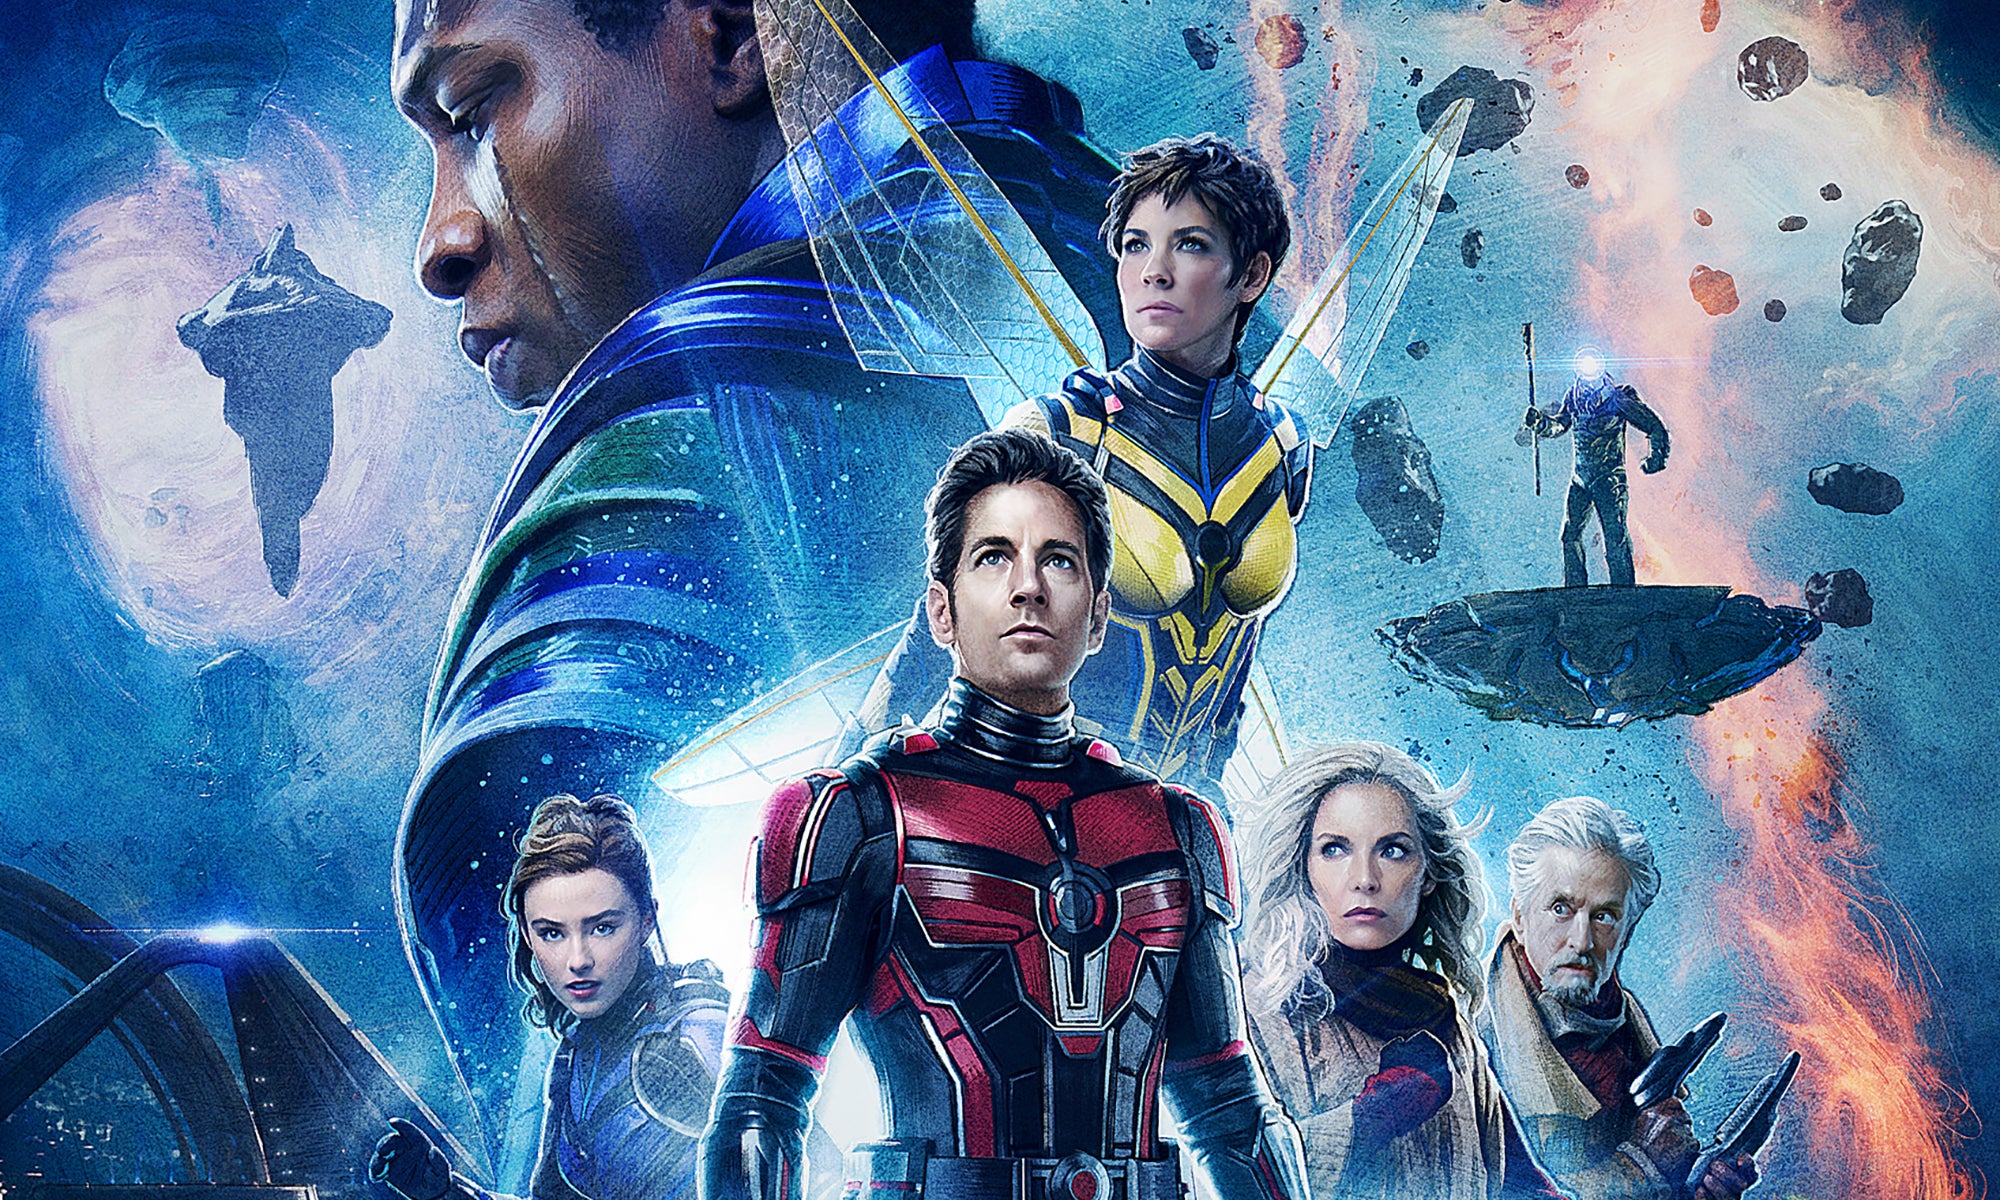 Ant-Man 3 cast - đây là thông tin đáng chú ý đối với những ai yêu thích bộ phim siêu anh hùng từ Marvel. Với cái tên \